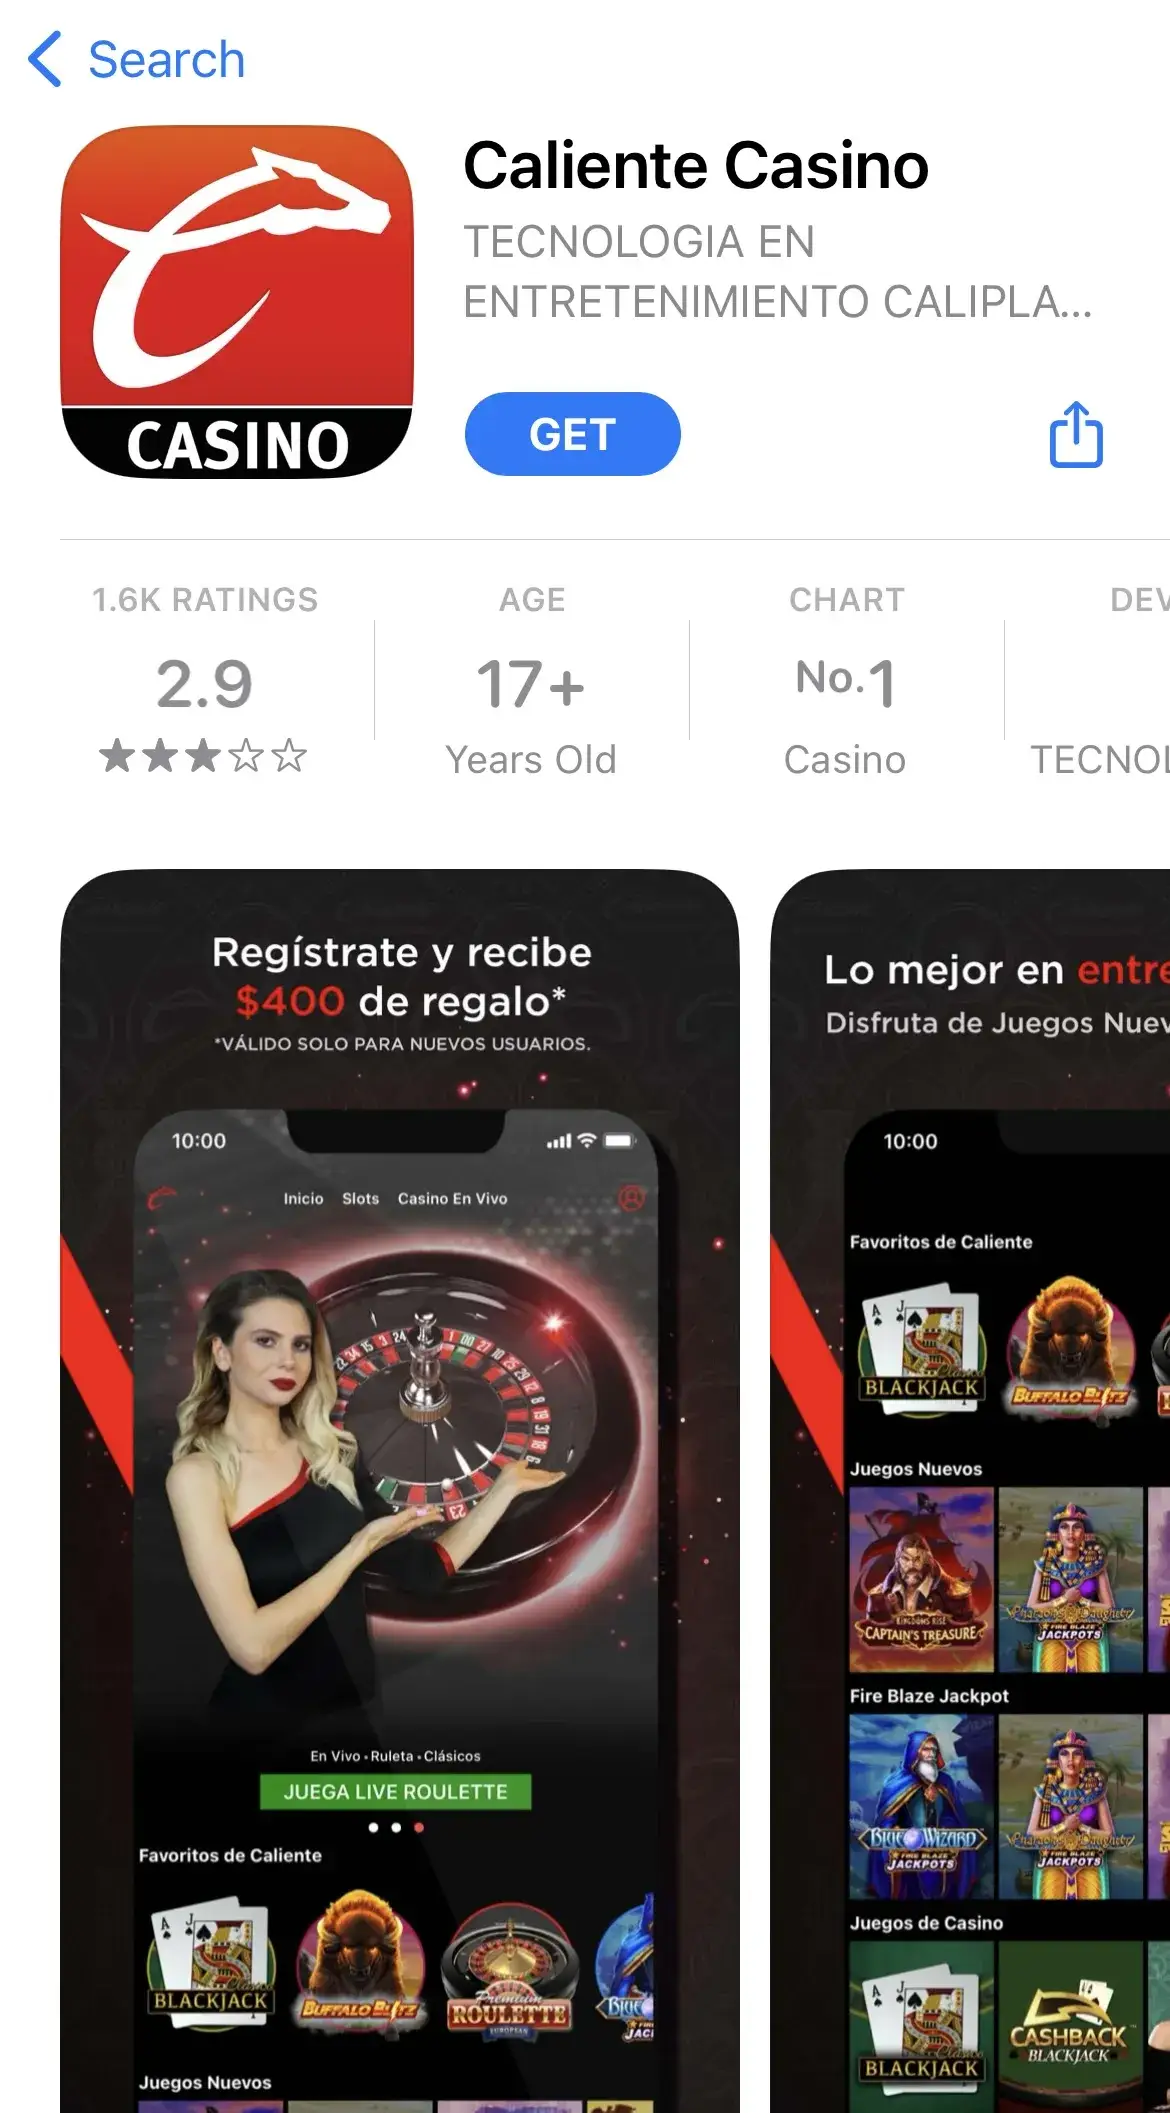 Caliente Casino app